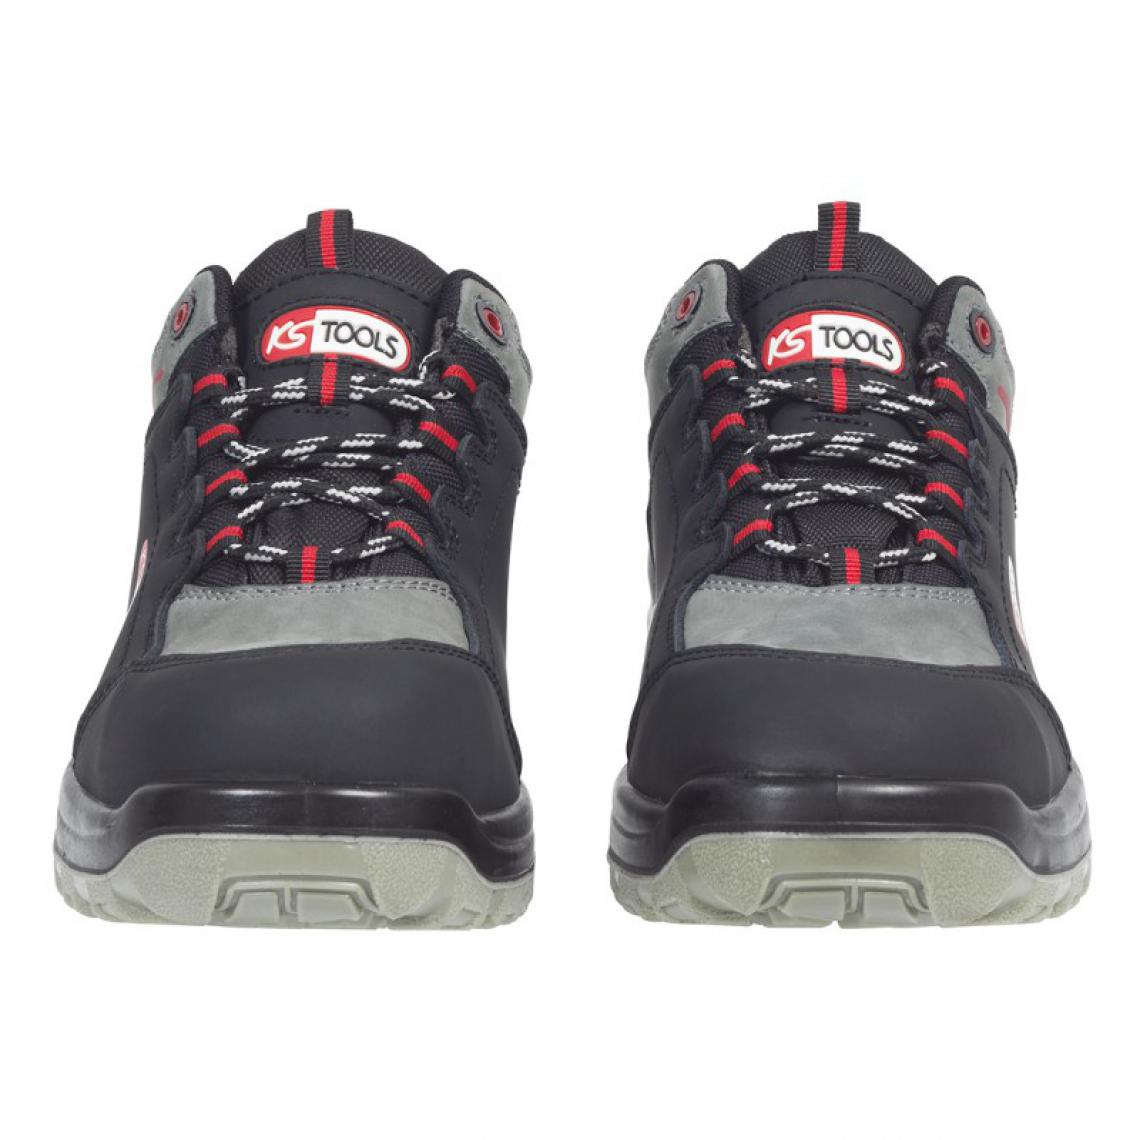 Kstools - Chaussures de sécurité KSTOOLS Couleur grise et noire taille 43 - Equipement de Protection Individuelle